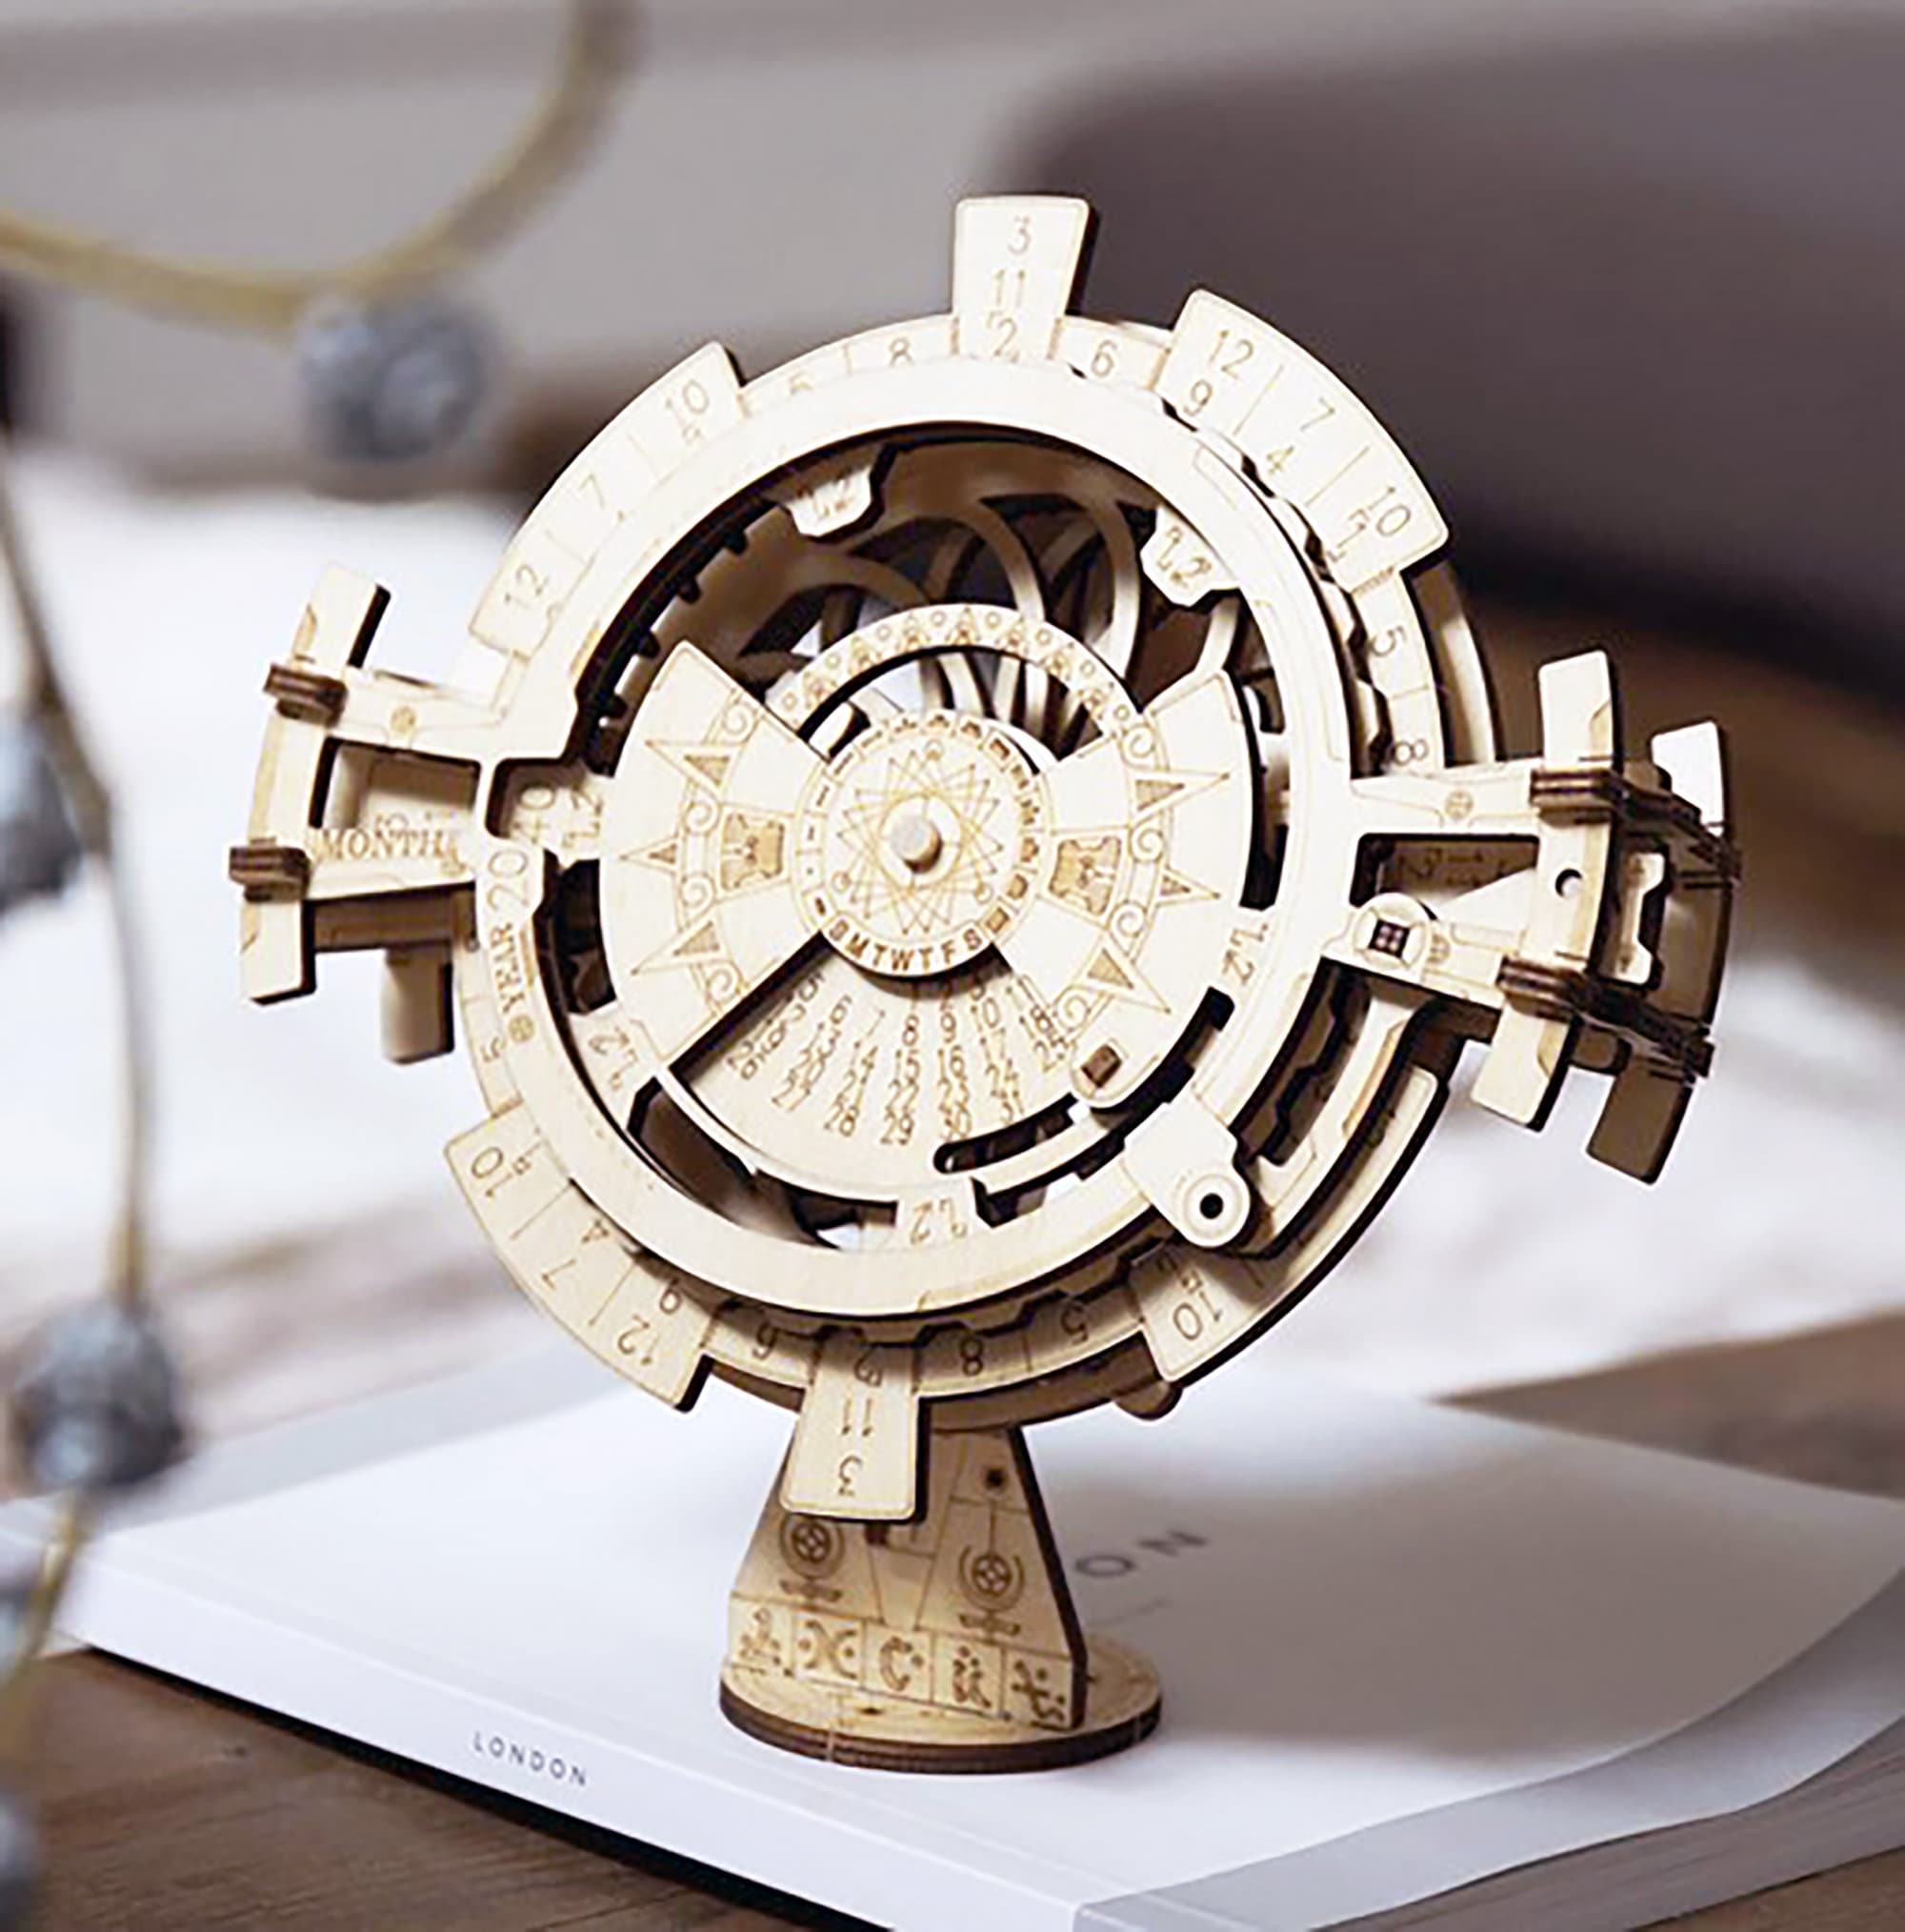 Details about   Mechanical Wooden Puzzle Perpetual Calendar  Creative 3D Model DIY Building Kit 